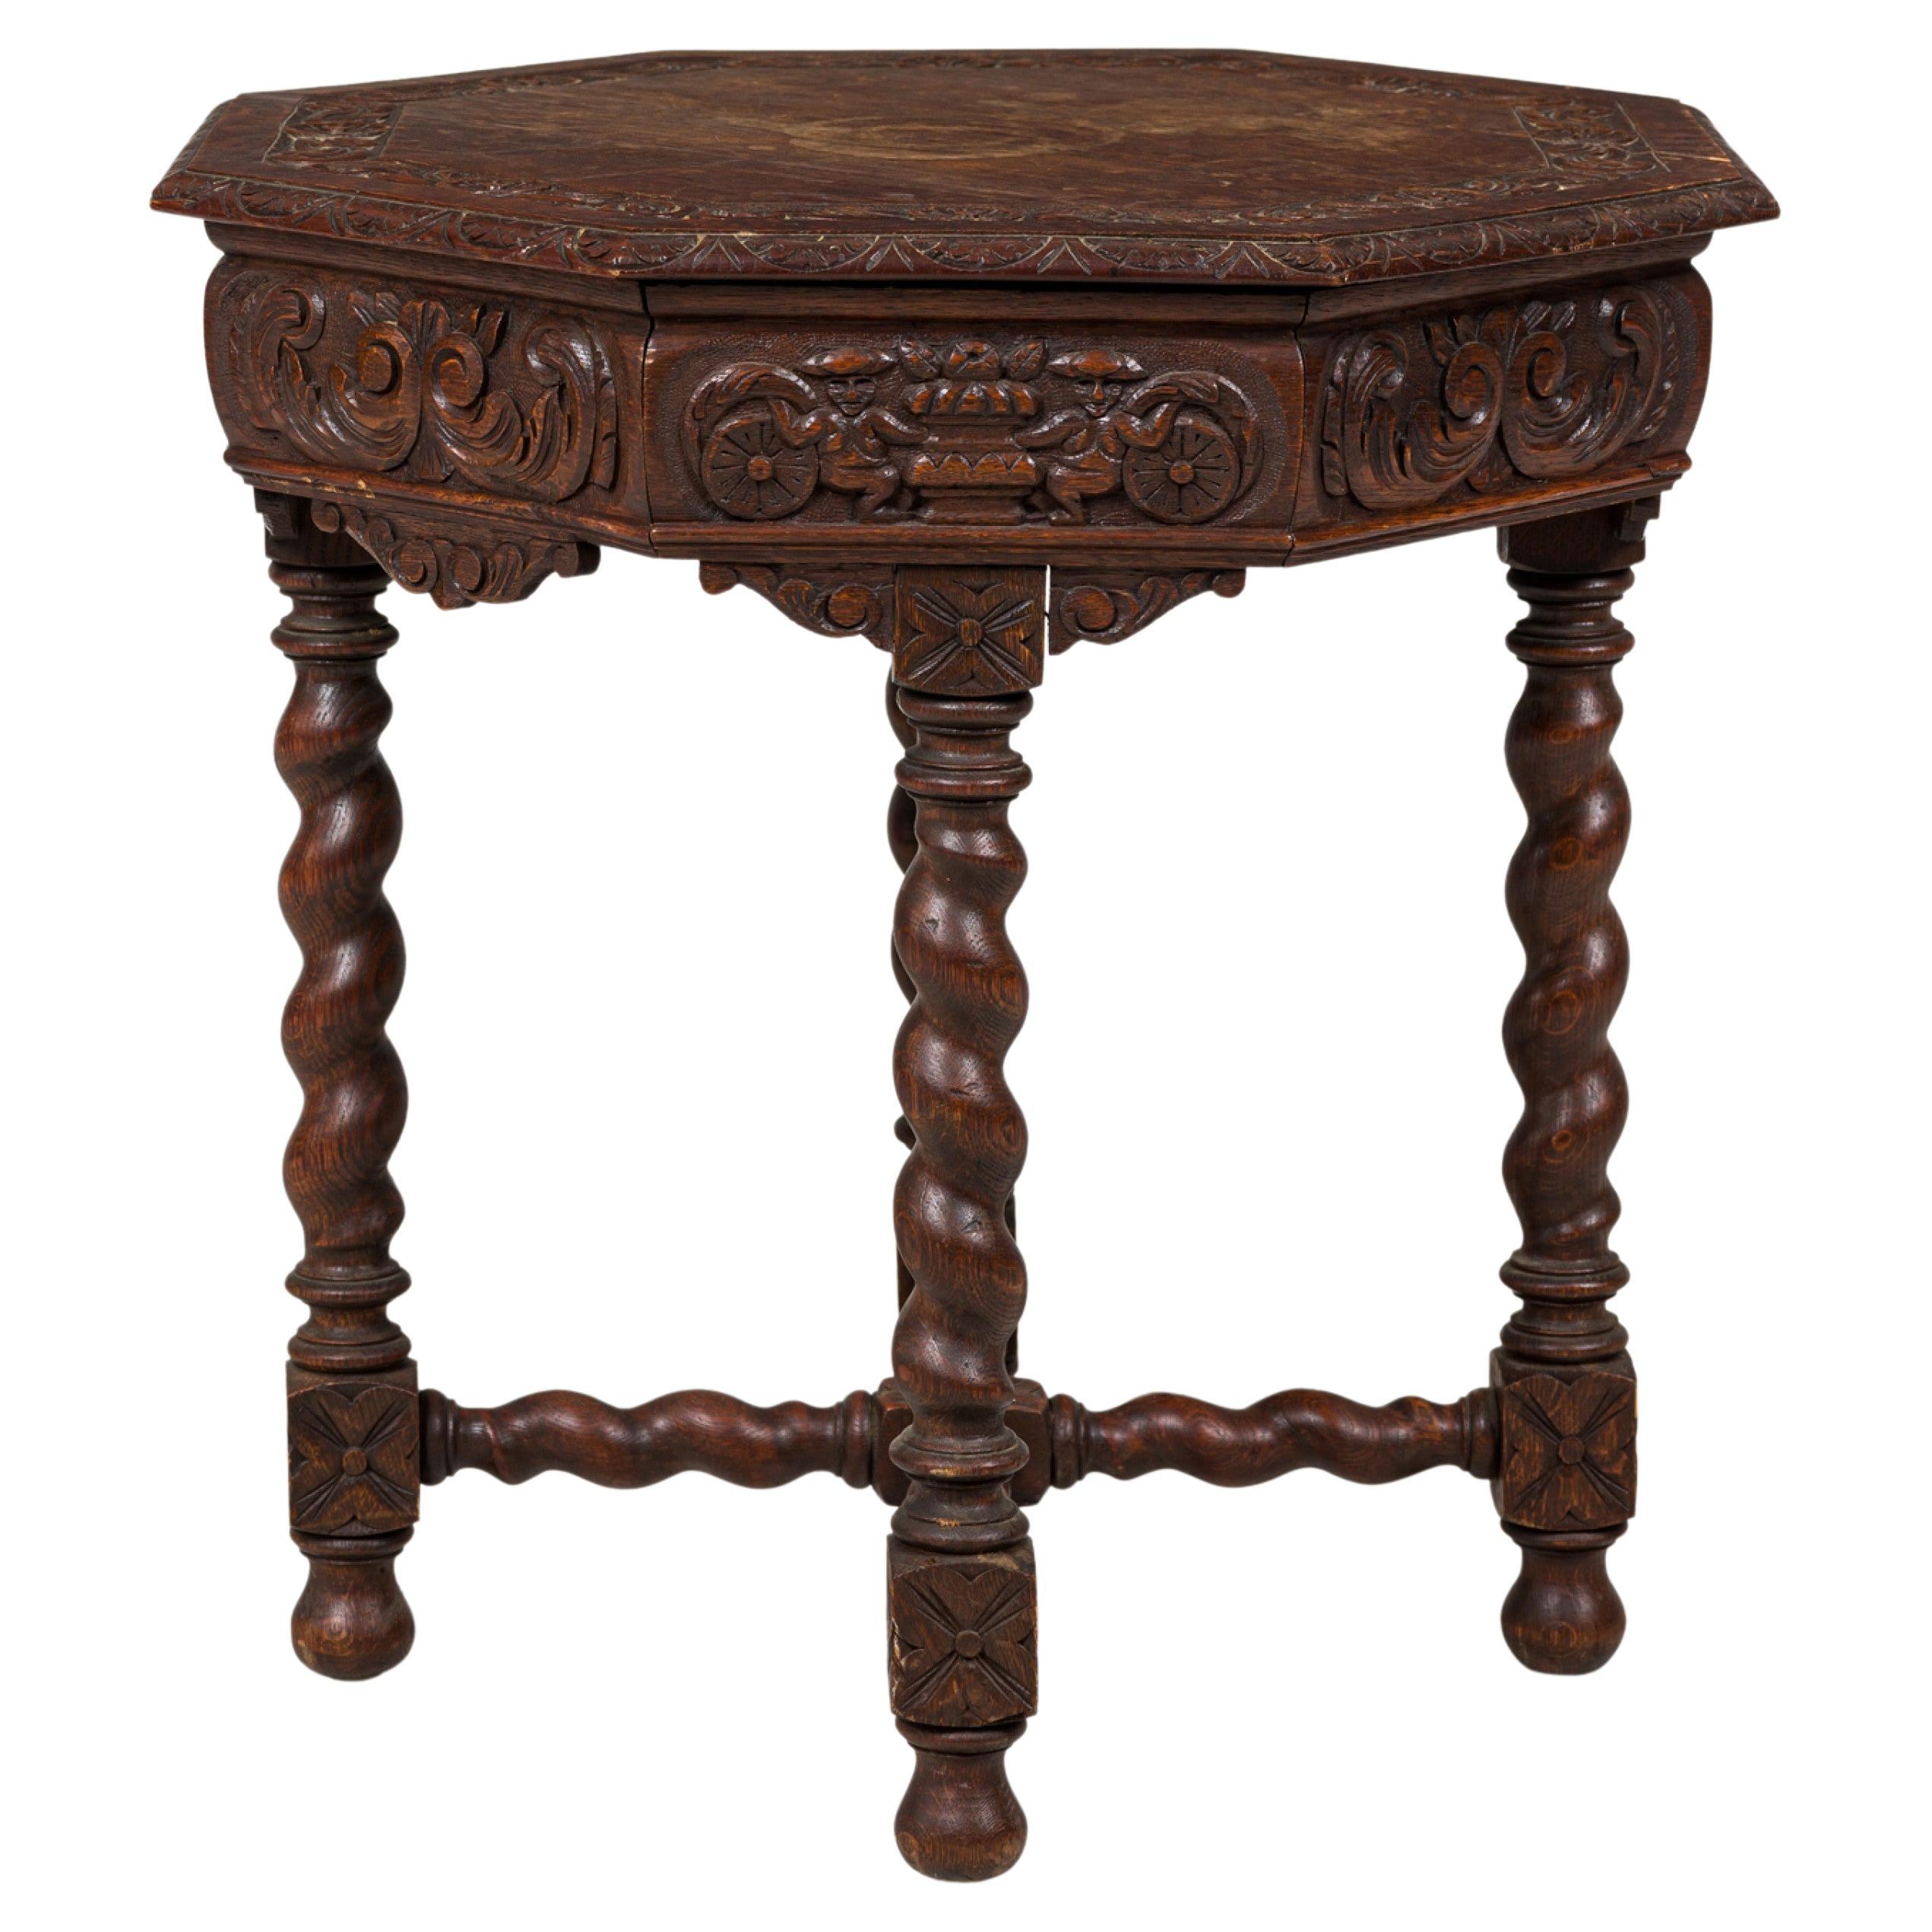 Table d'appoint octogonale à pieds tournés en spirale de style jacobéen anglais